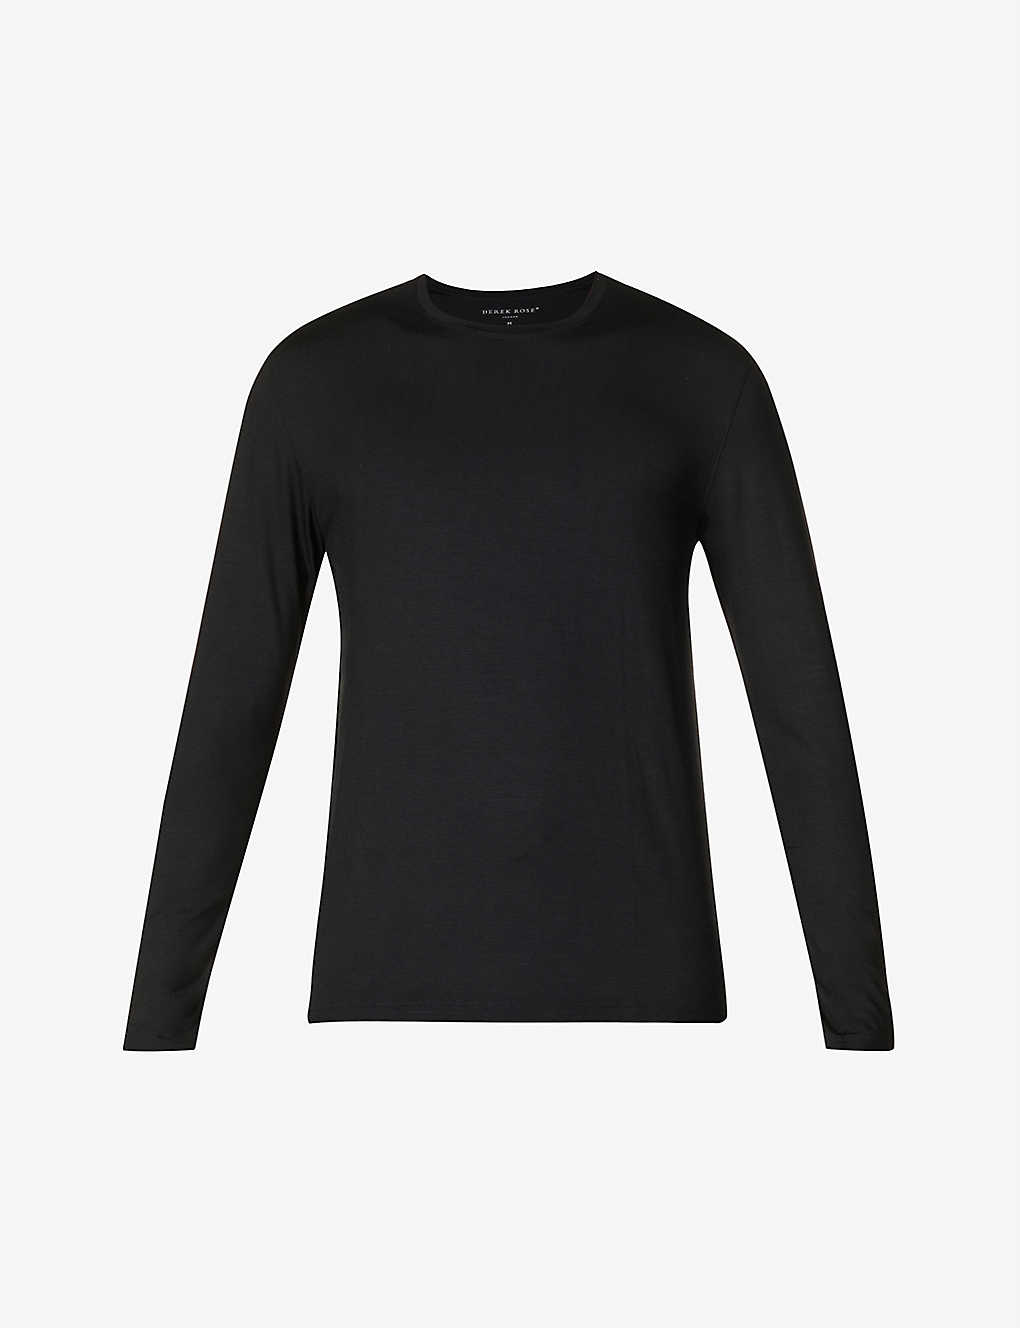 Shop Derek Rose Men's Black Basel Long-sleeved Stretch-modal Top